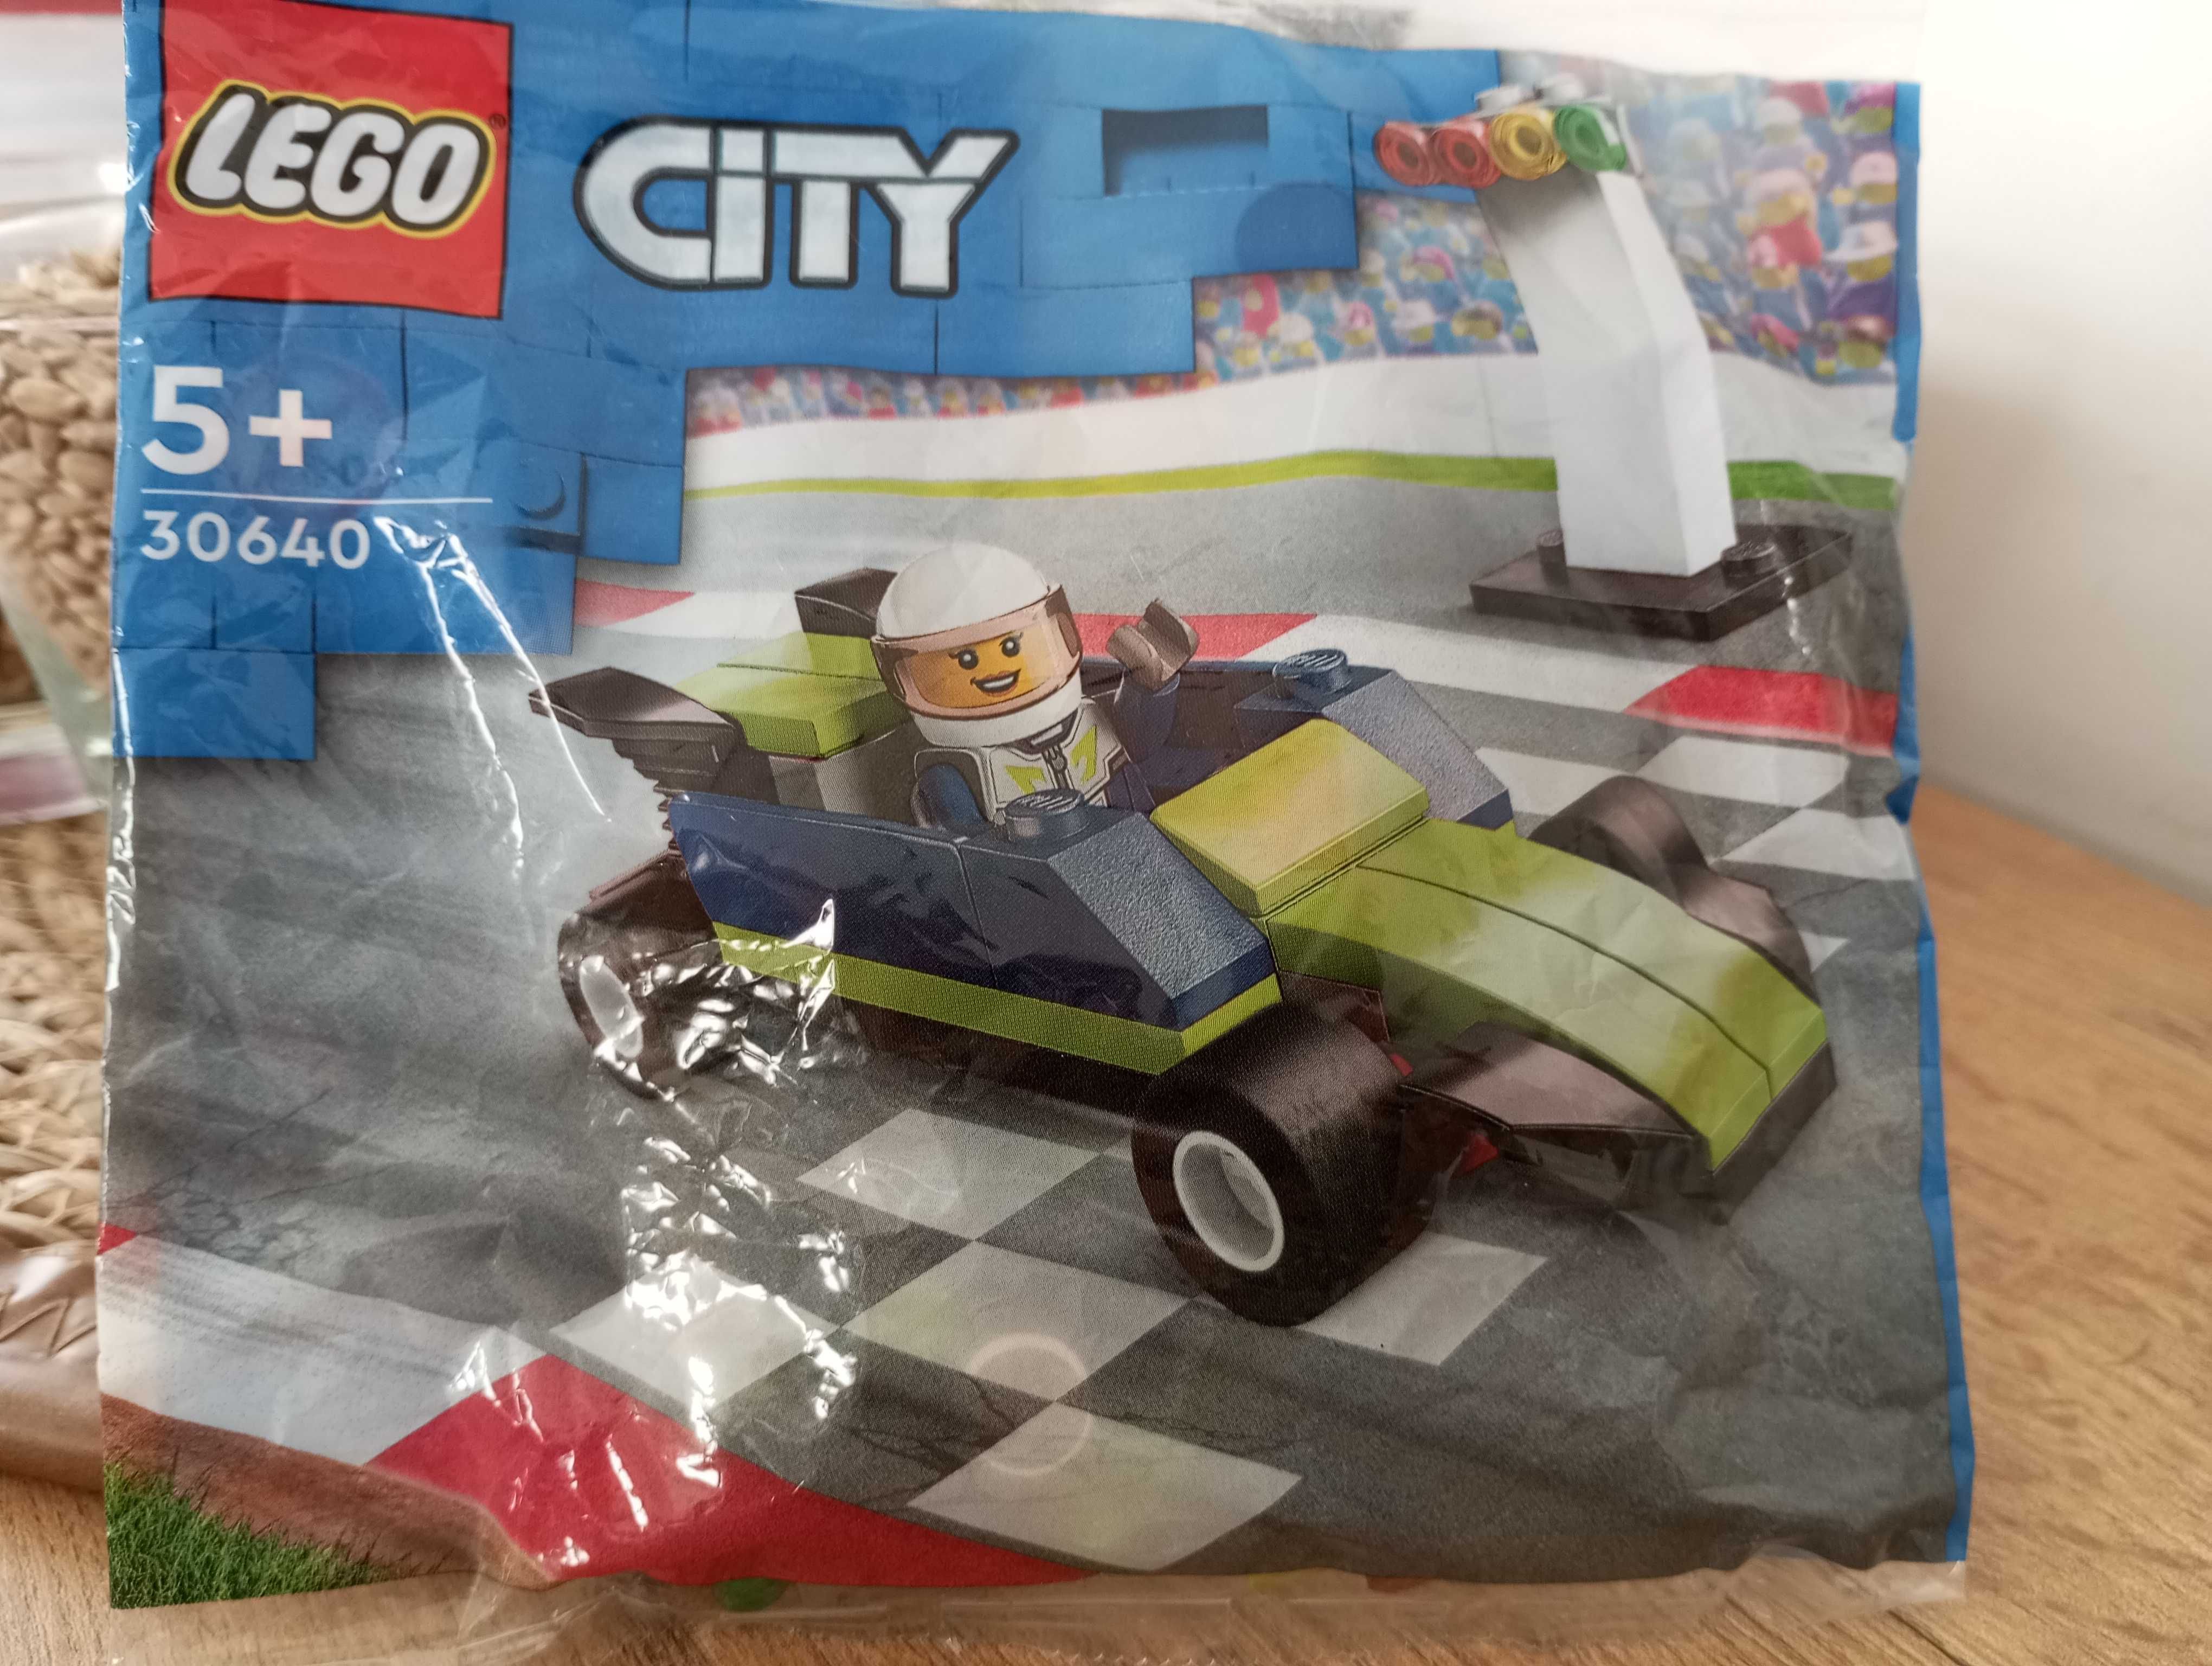 LEGO city 30640.